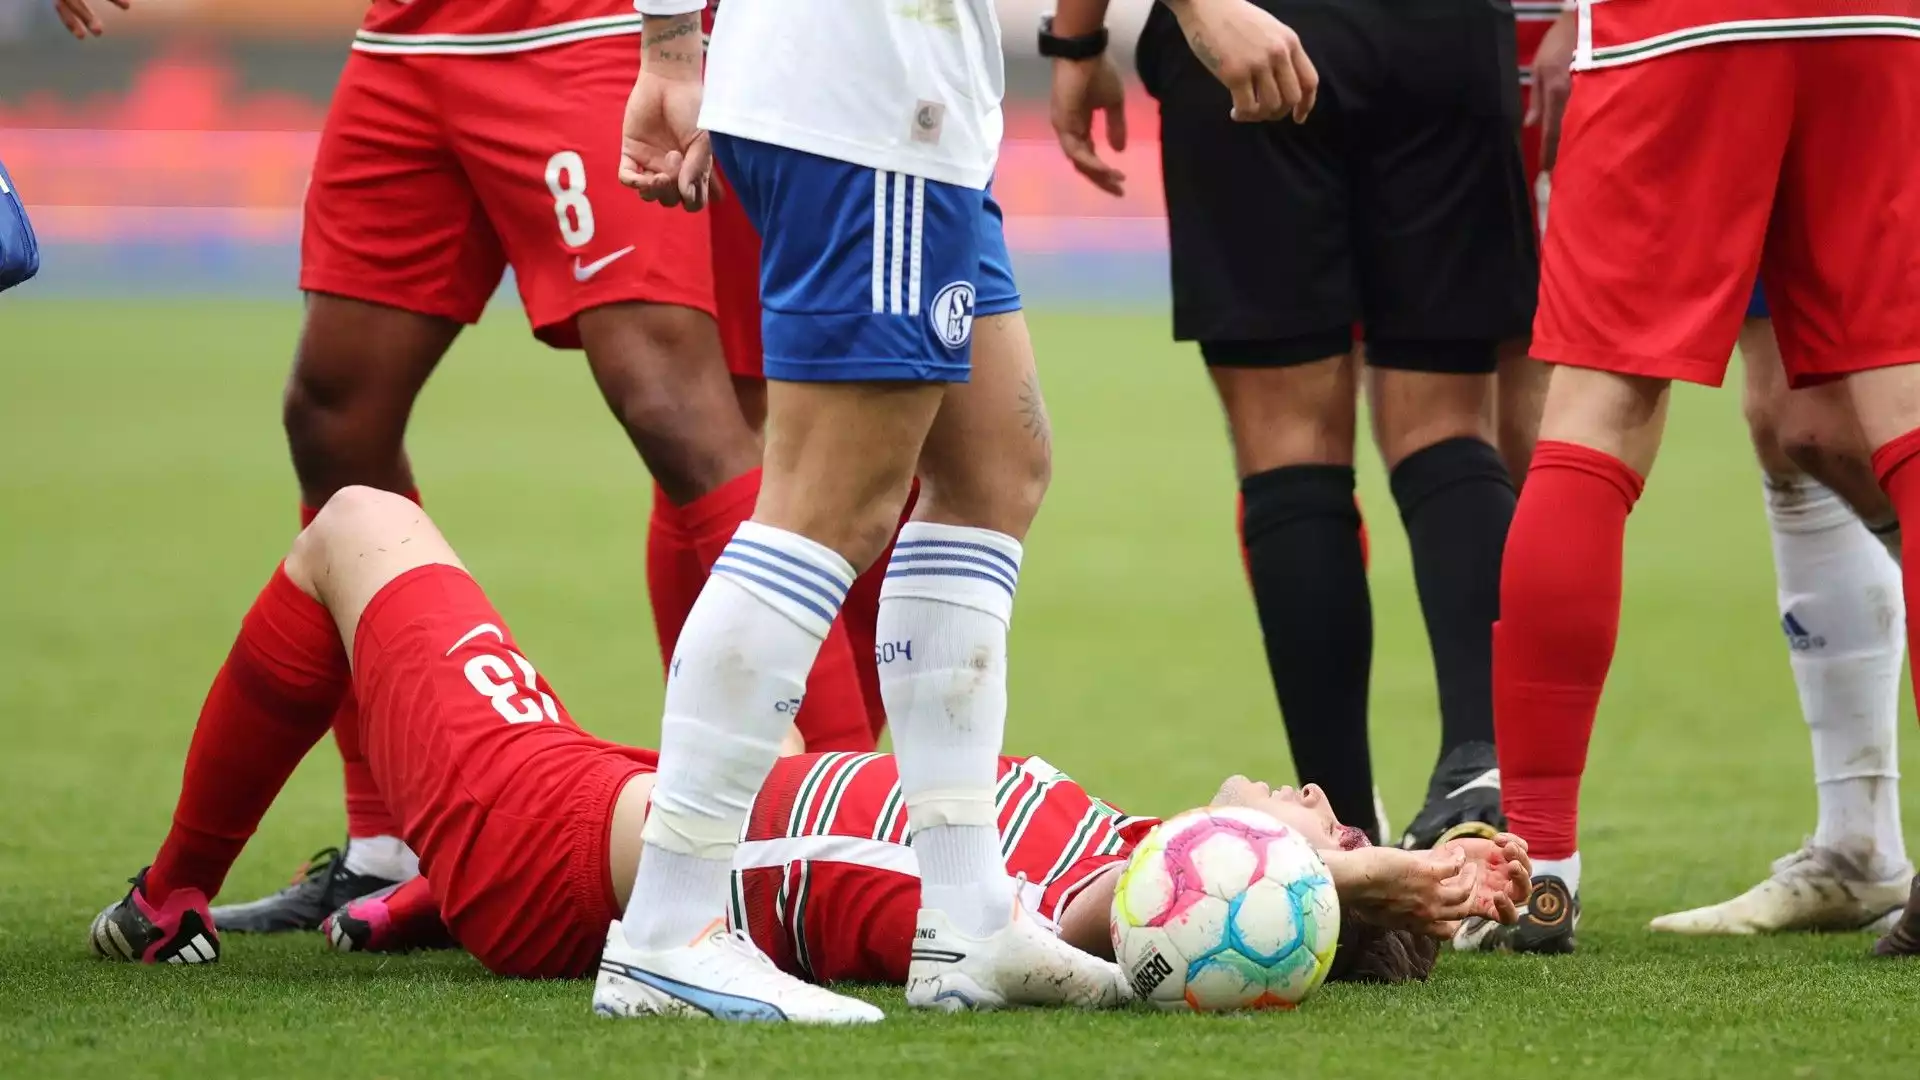 Il calciatore albanese ha ricevuto un duro colpo in testa